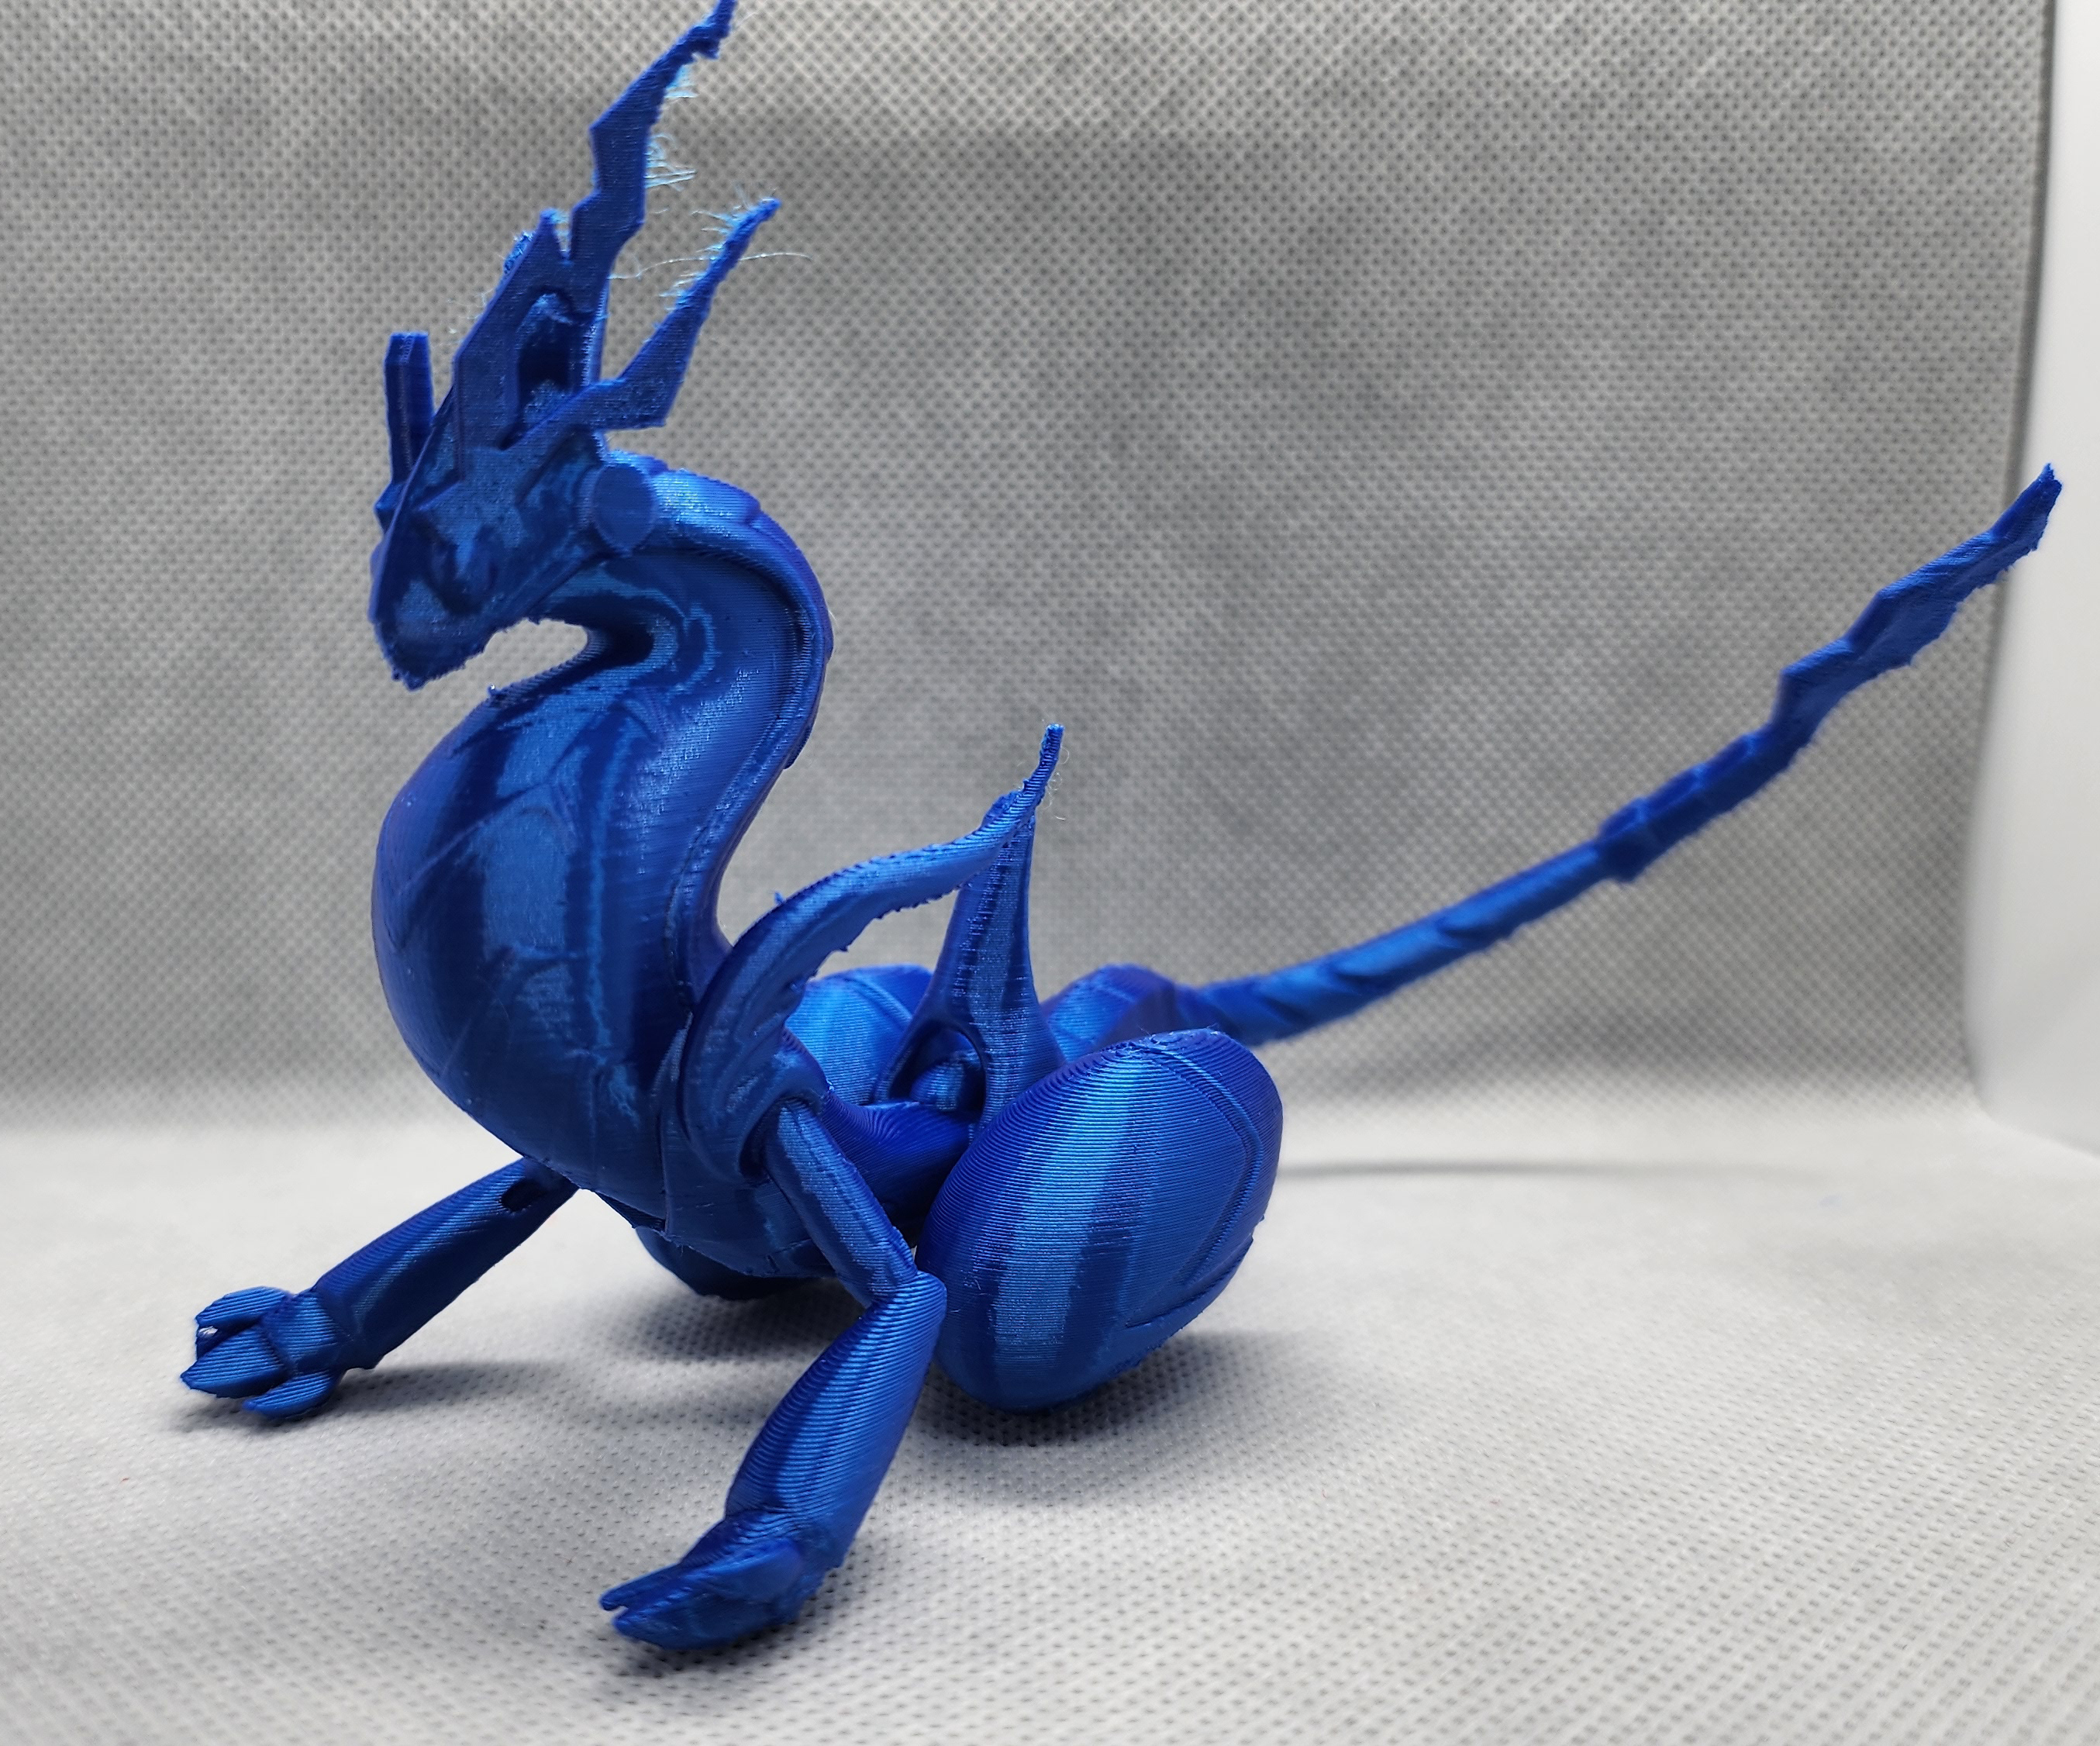 Pokemon Miraidon 3D model 3D printable